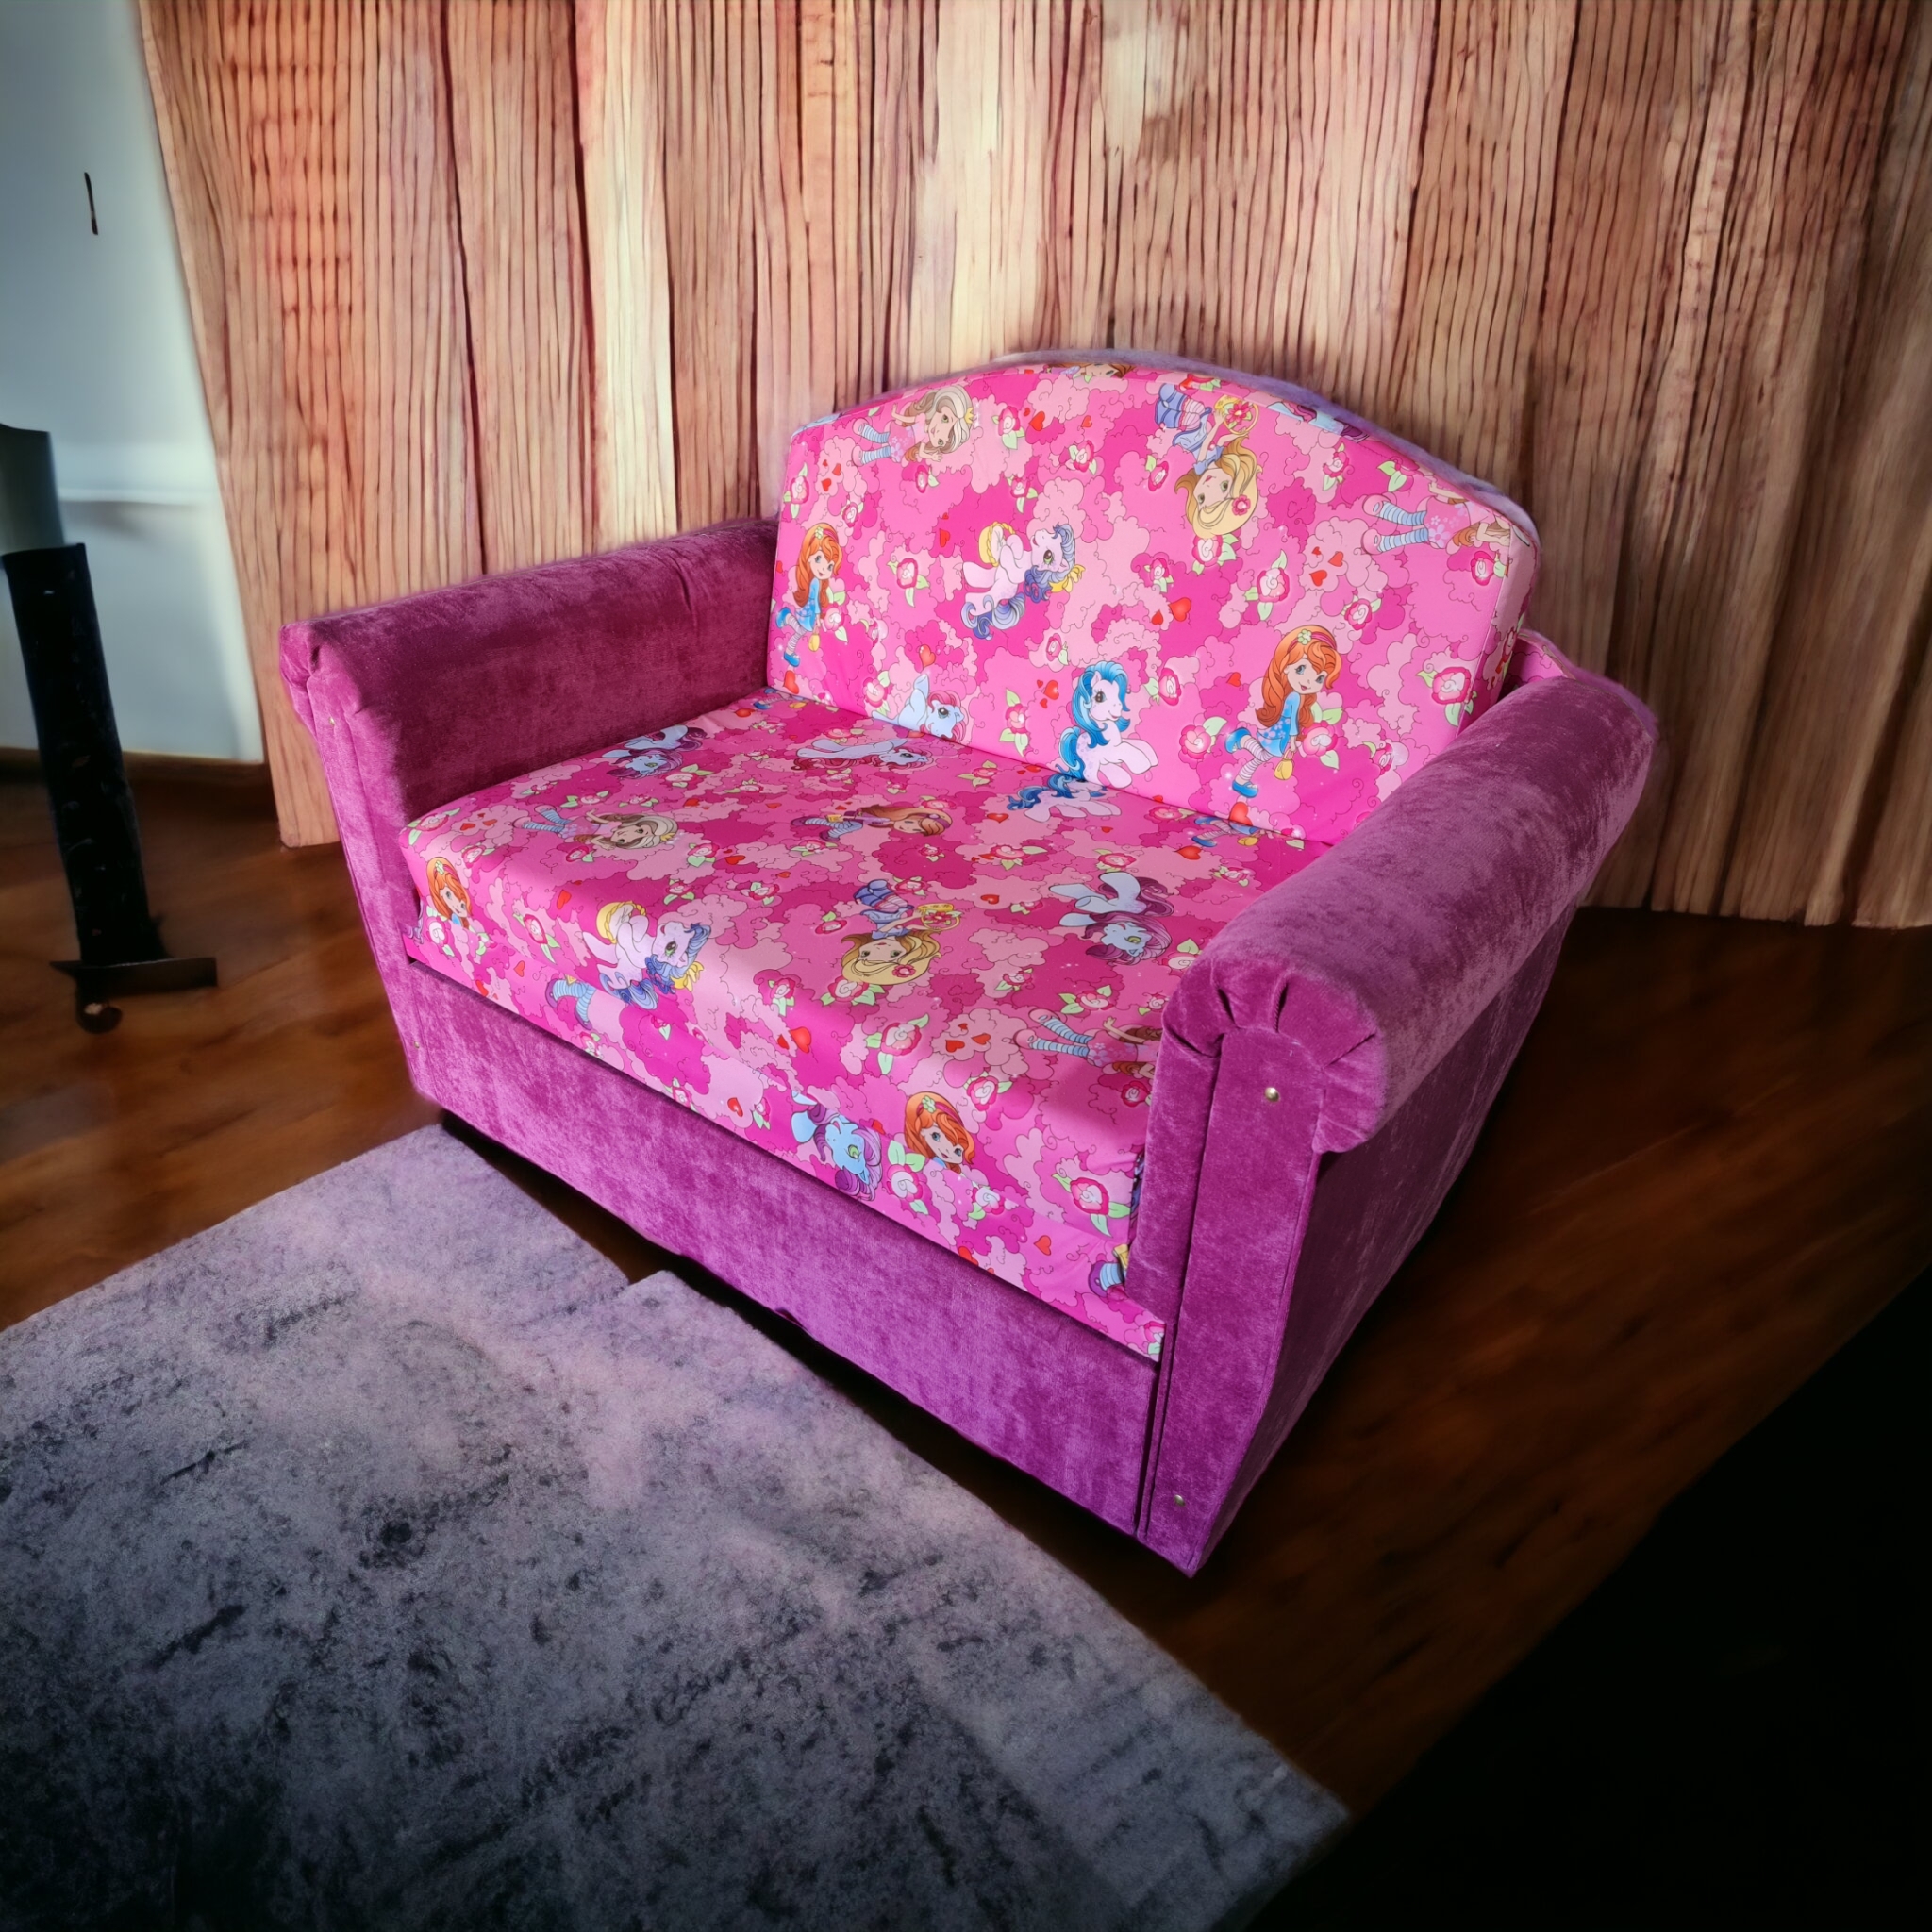 Мини диван -Лика- вперёд выкатной диван, цена 10900руб, нажмите на картинку, чтобы посмотреть ассортимент расцветок в наличии. Купить недорогой диван по низкой цене от производителя можно у нас.